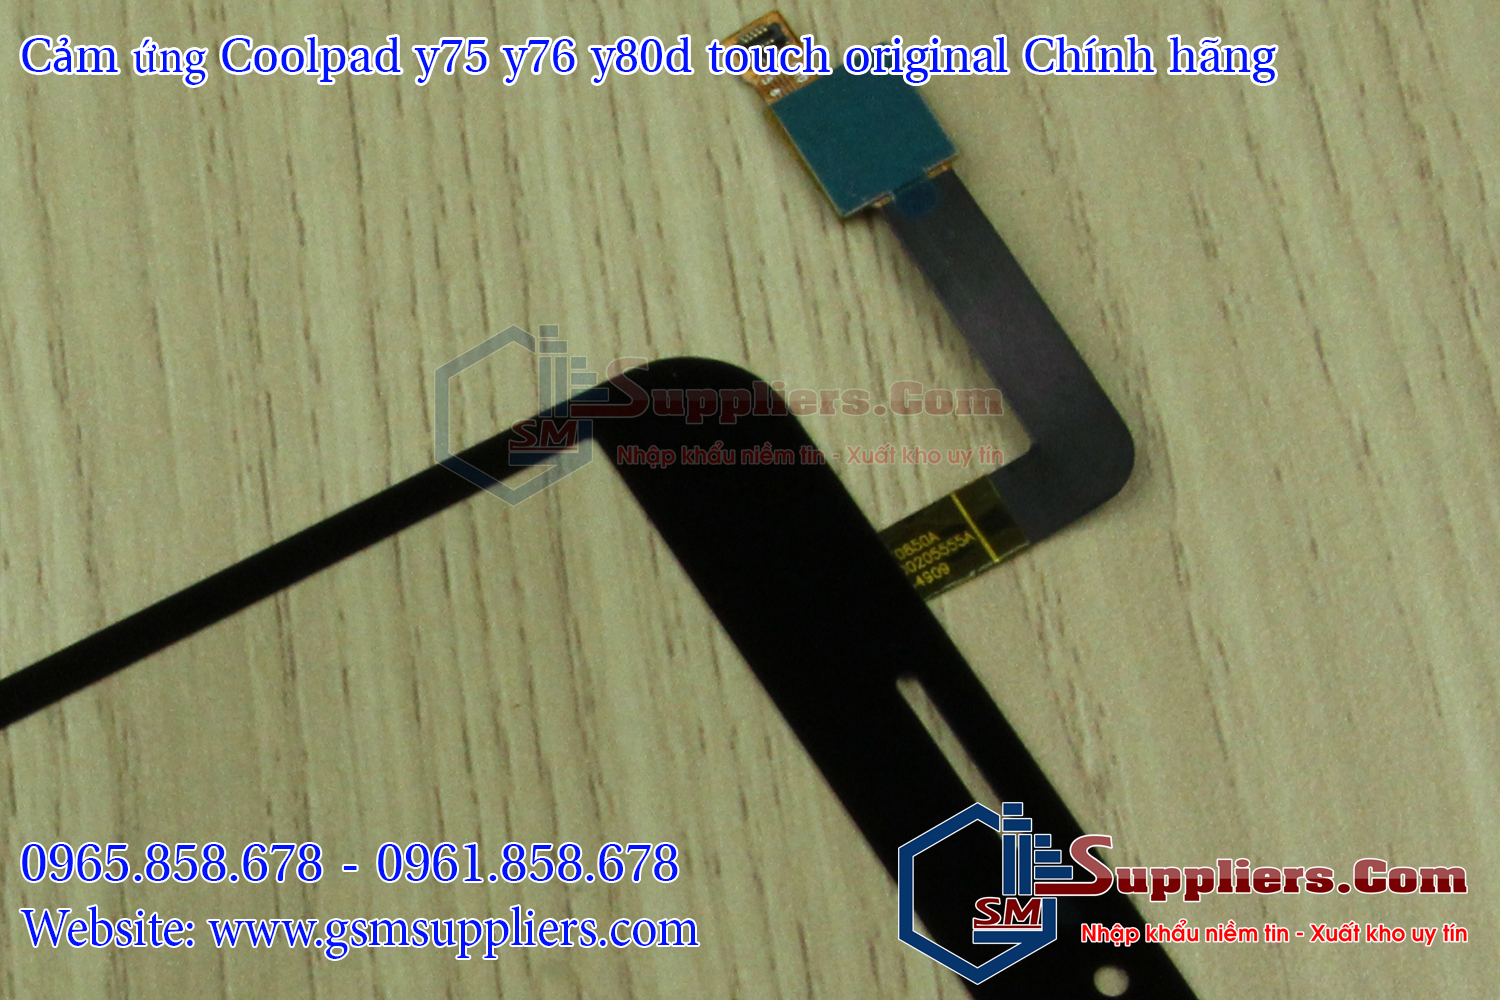 cam ung coolpad y75 y76 y80d touch original chinh hang 4